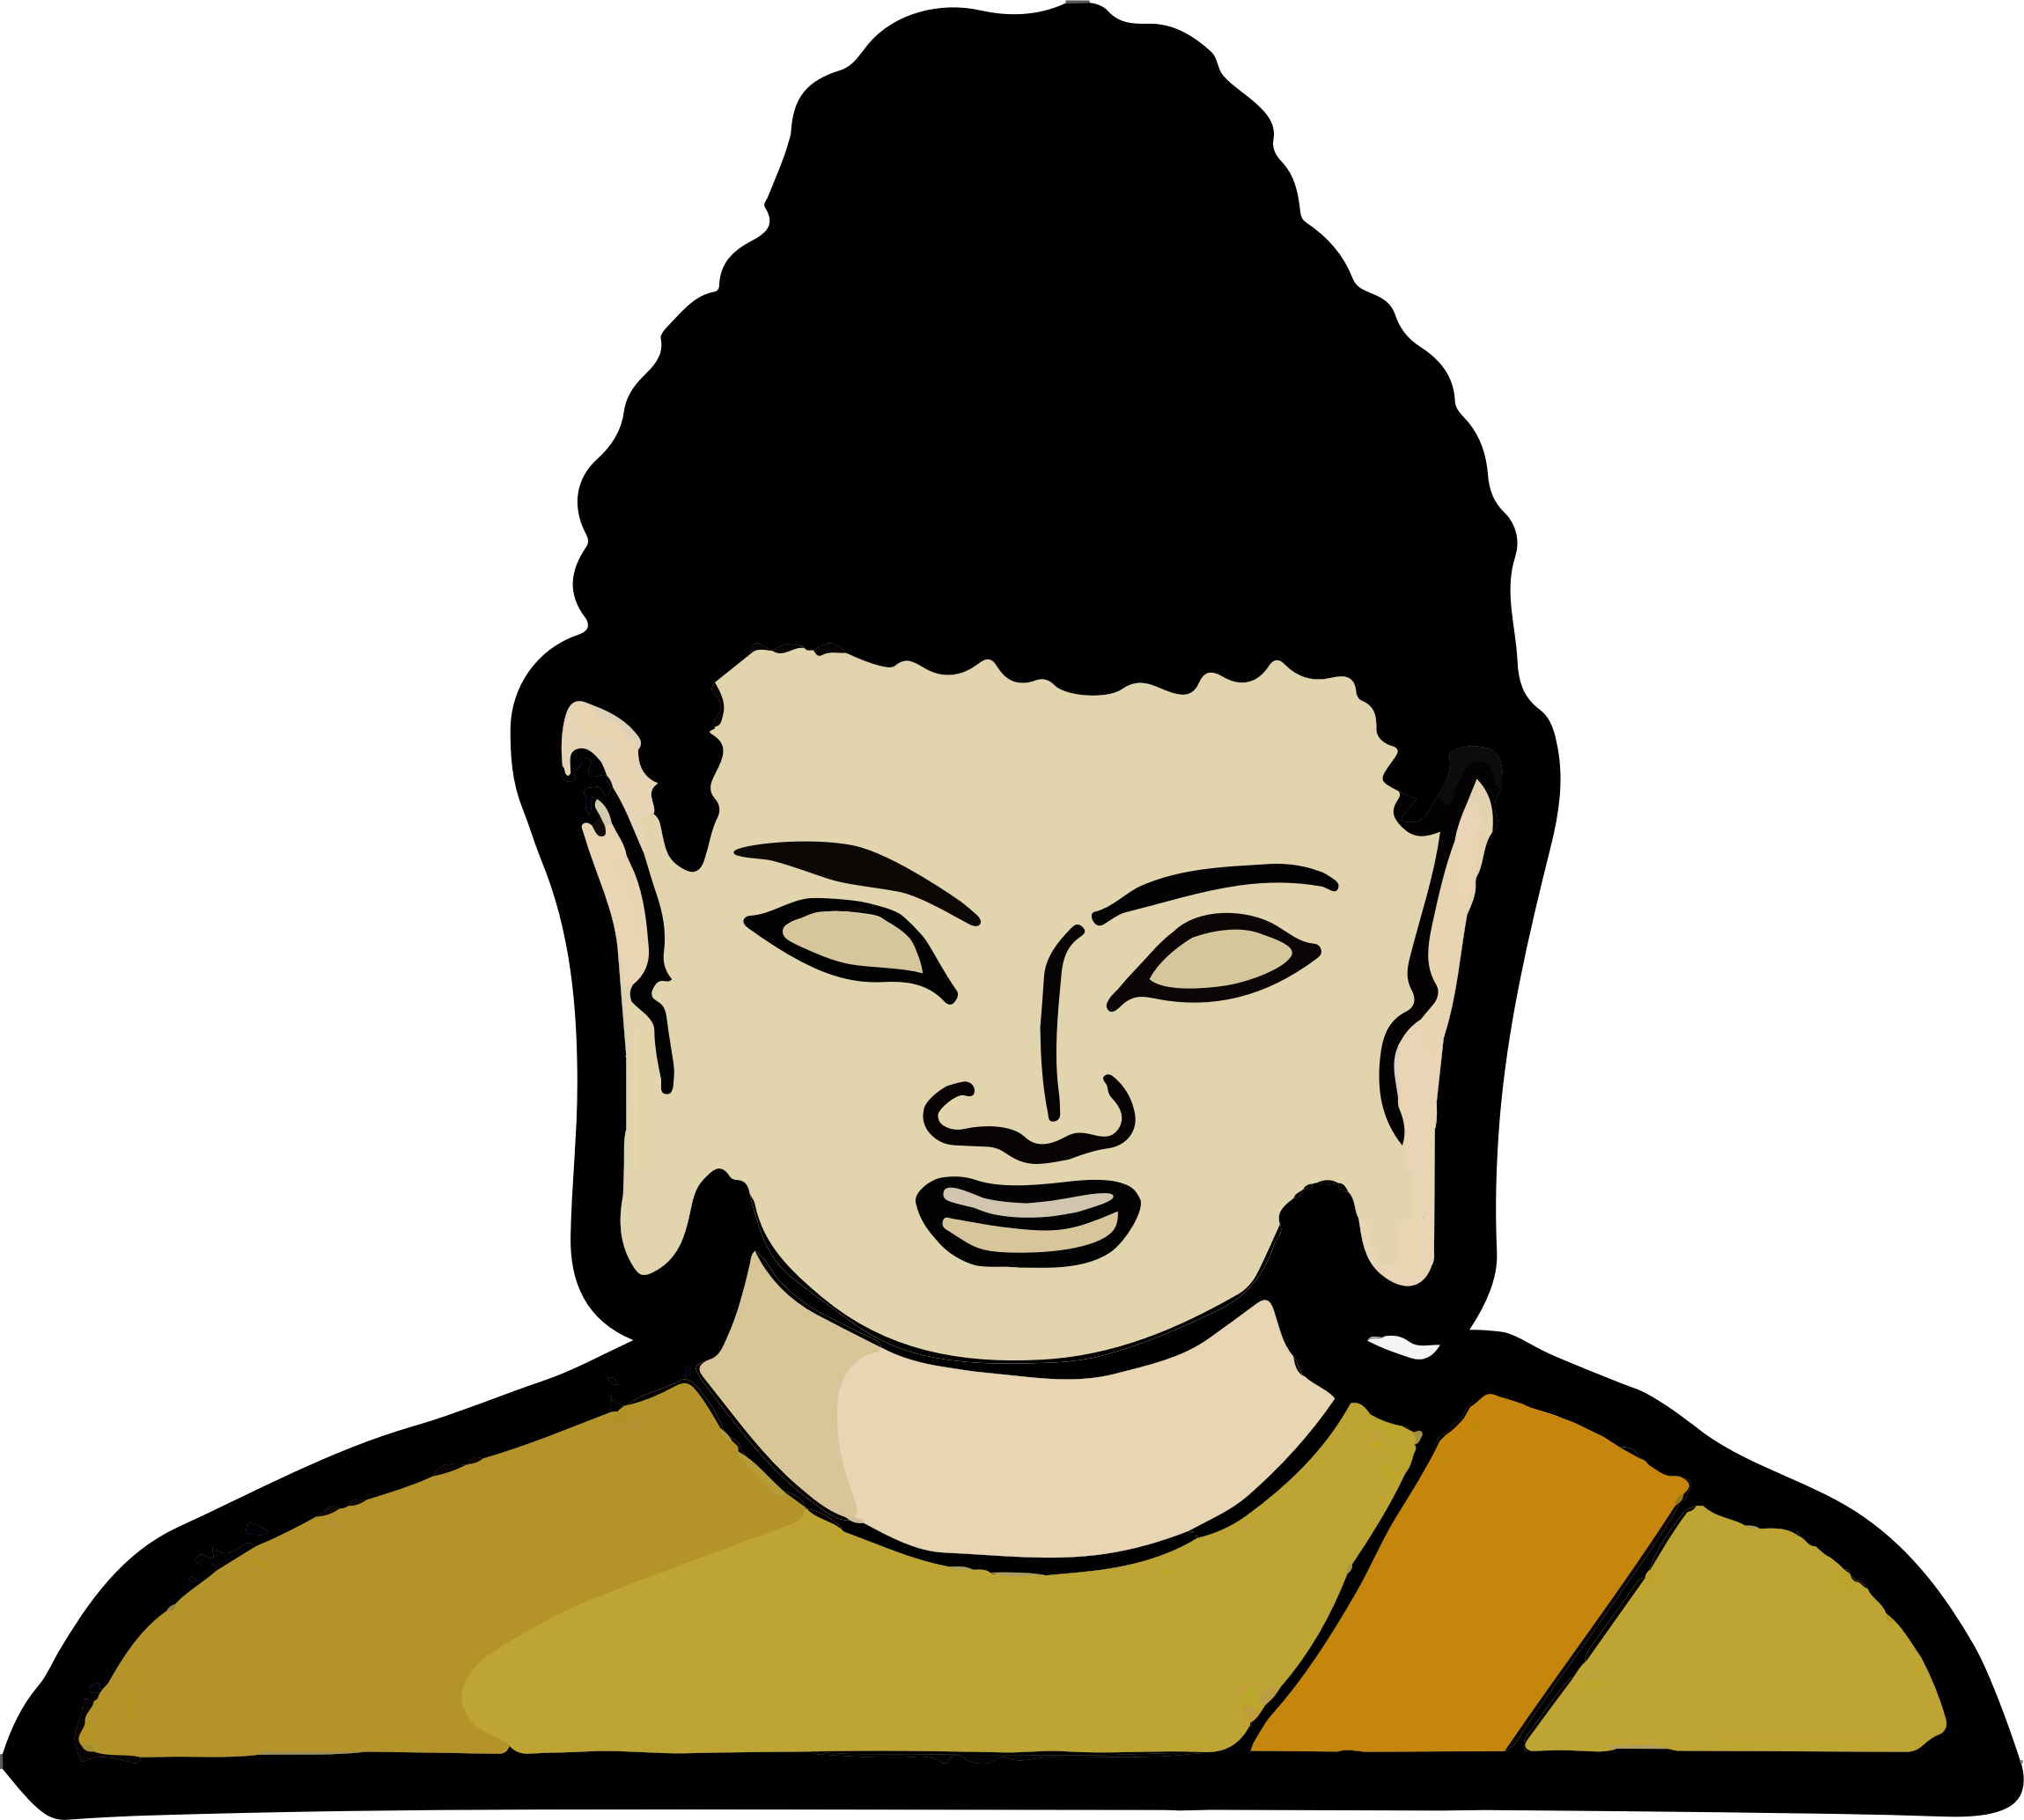 Big Image - Gautama Buddha (2299x2067)